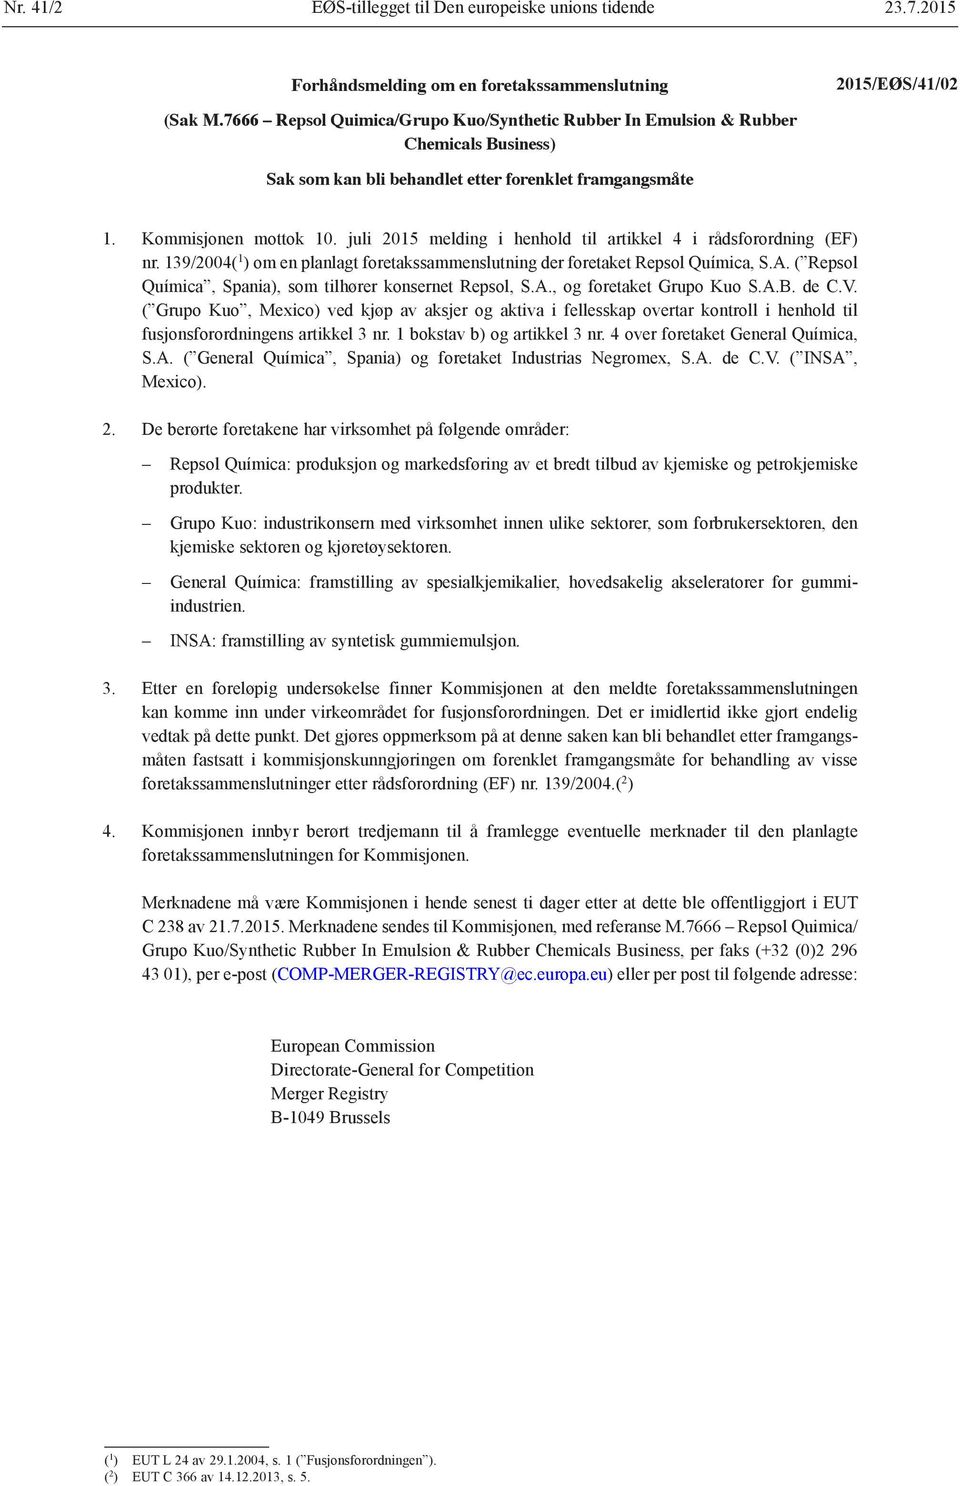 juli 2015 melding i henhold til artikkel 4 i rådsforordning (EF) nr. 139/2004( 1 ) om en planlagt foretakssammenslutning der foretaket Repsol Química, S.A.